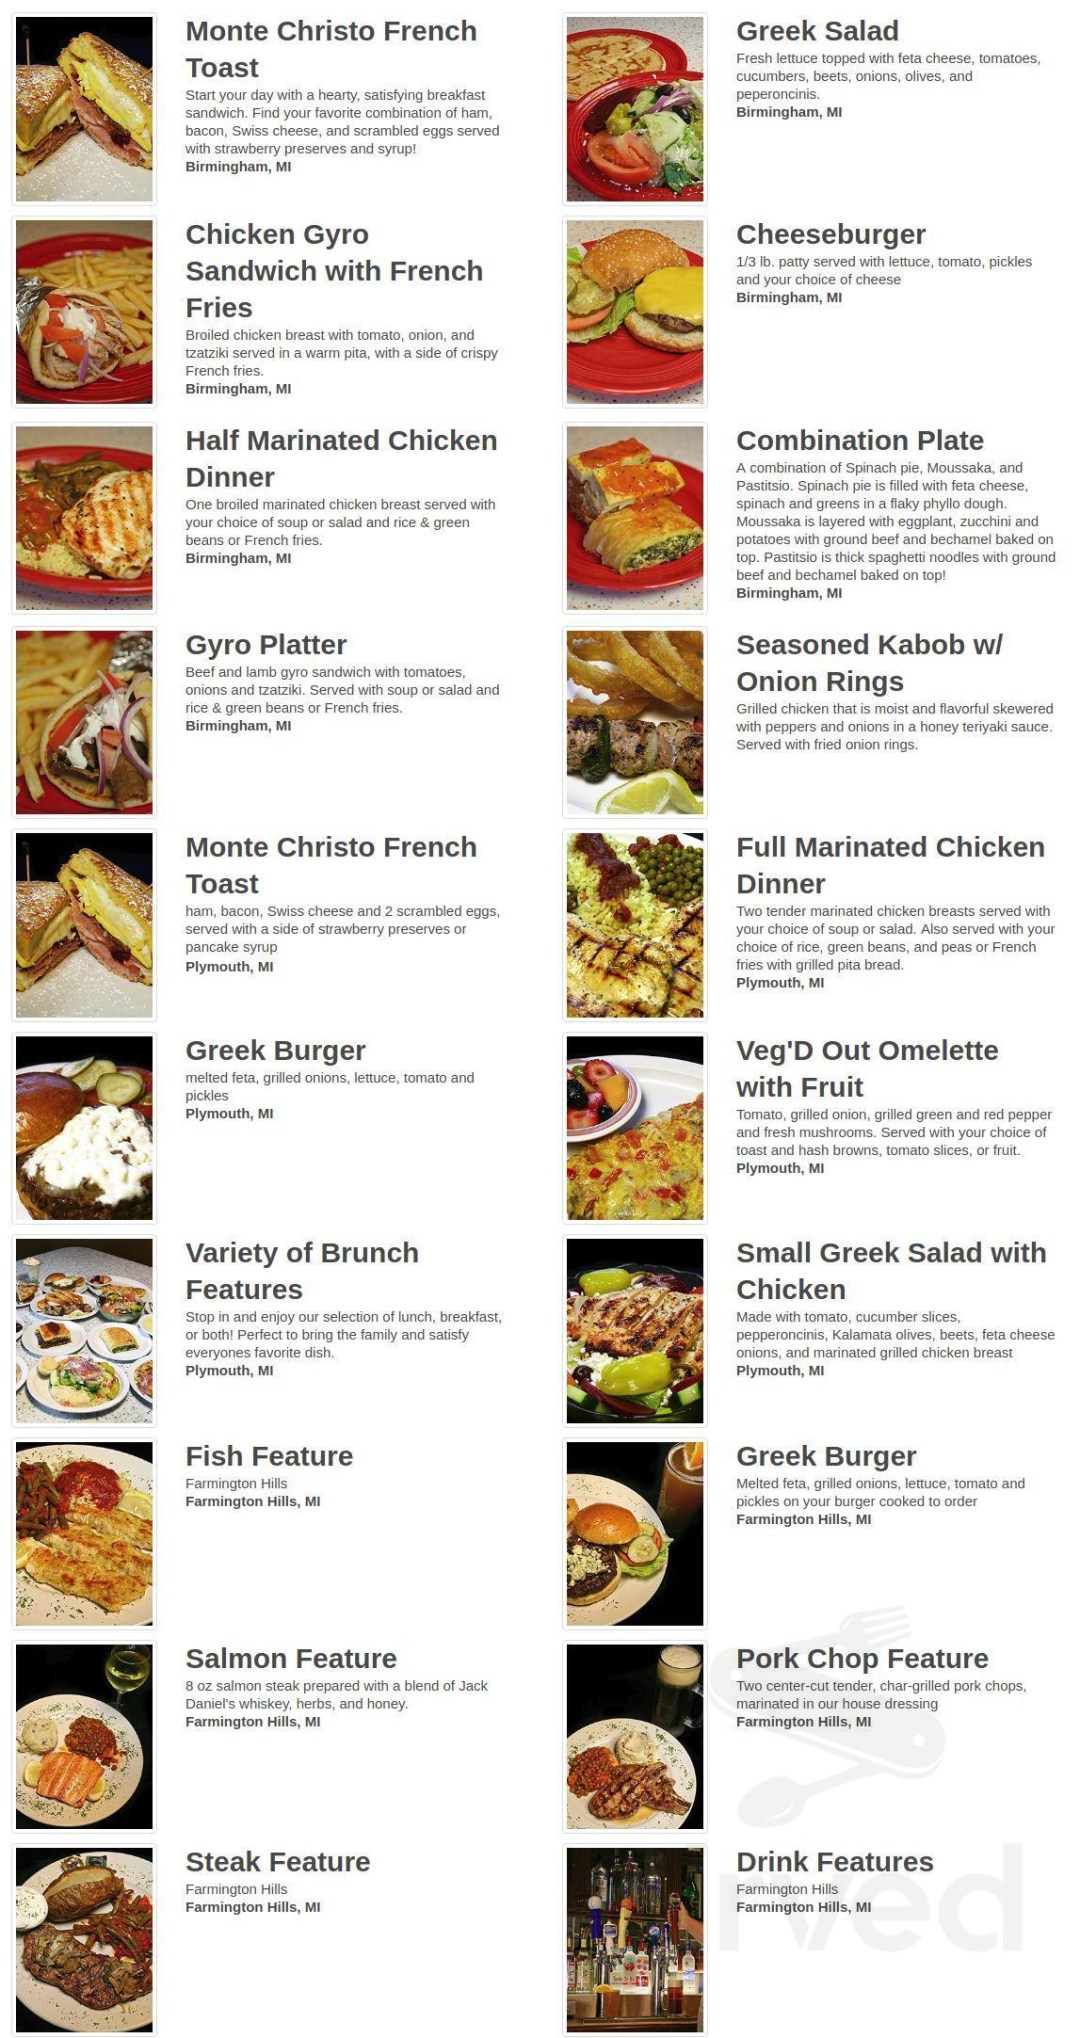 Picture of: Greek Islands Coney Restaurant menu in Birmingham, Michigan, USA